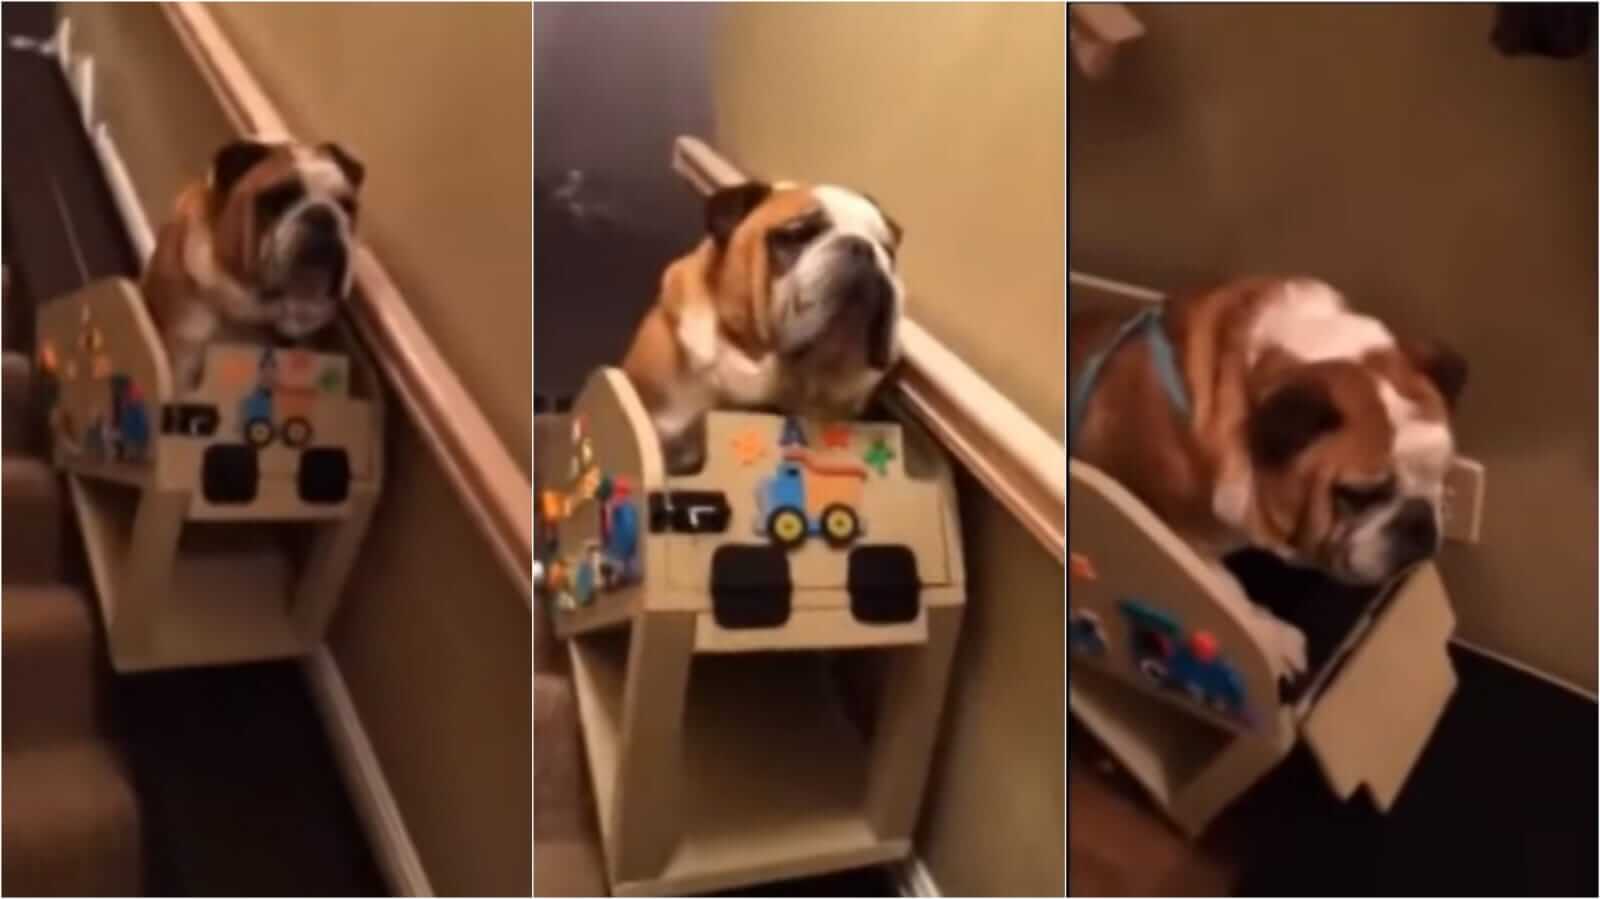 Cachorro boldogue em elevador